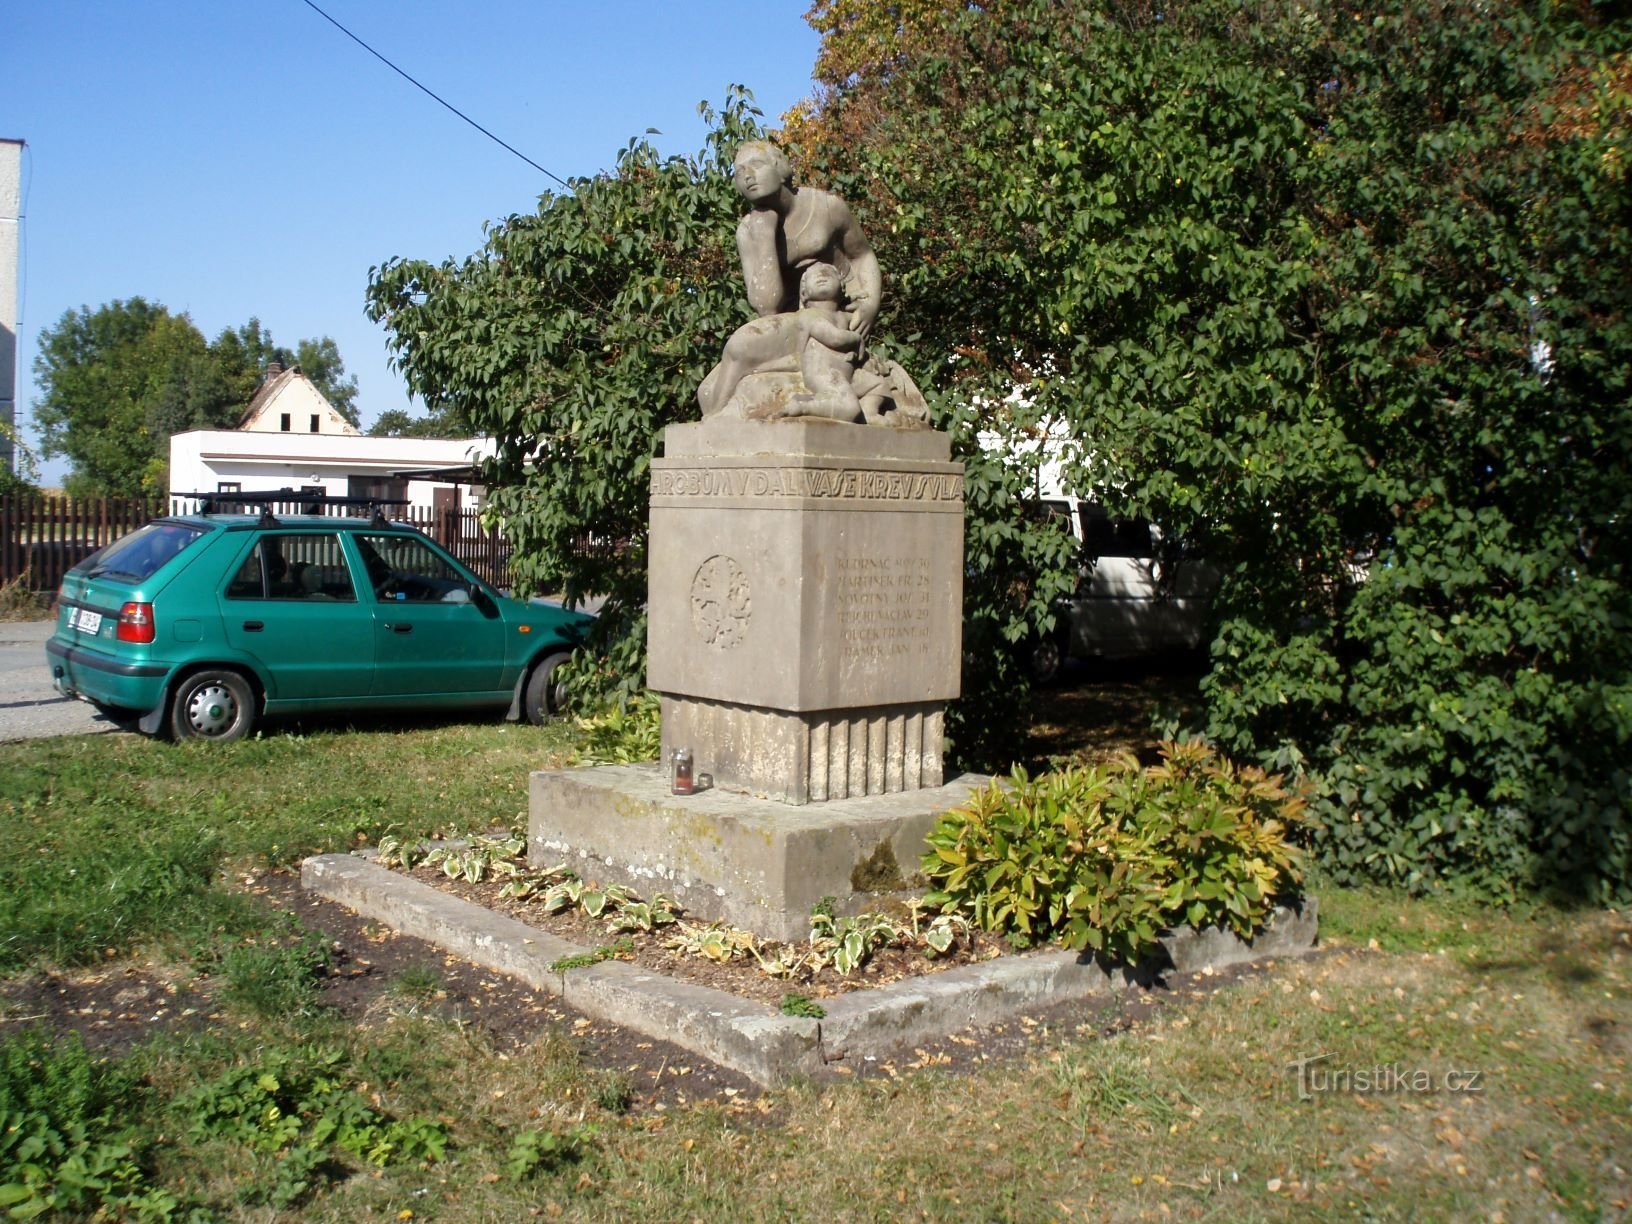 Đài tưởng niệm những người đã chết trong Chiến tranh thế giới thứ nhất ở Piletice (Hradec Králové, ngày 1 tháng 26.9.2009 năm XNUMX)